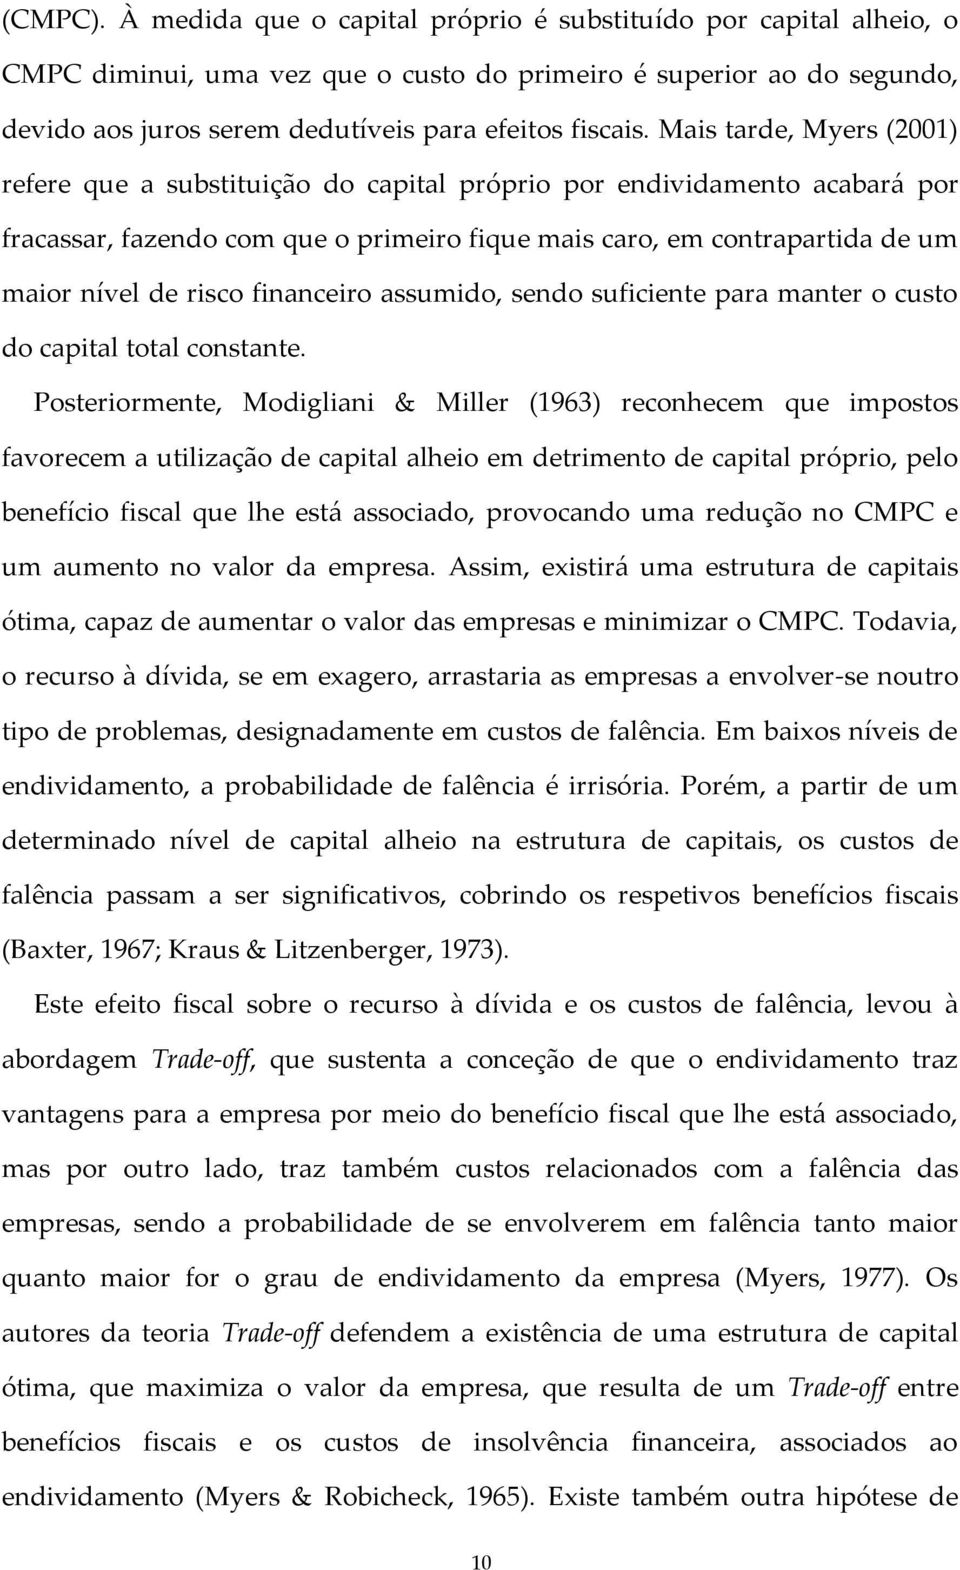 Mais tarde, Myers (2001) refere que a substituição do capital próprio por endividamento acabará por fracassar, fazendo com que o primeiro fique mais caro, em contrapartida de um maior nível de risco